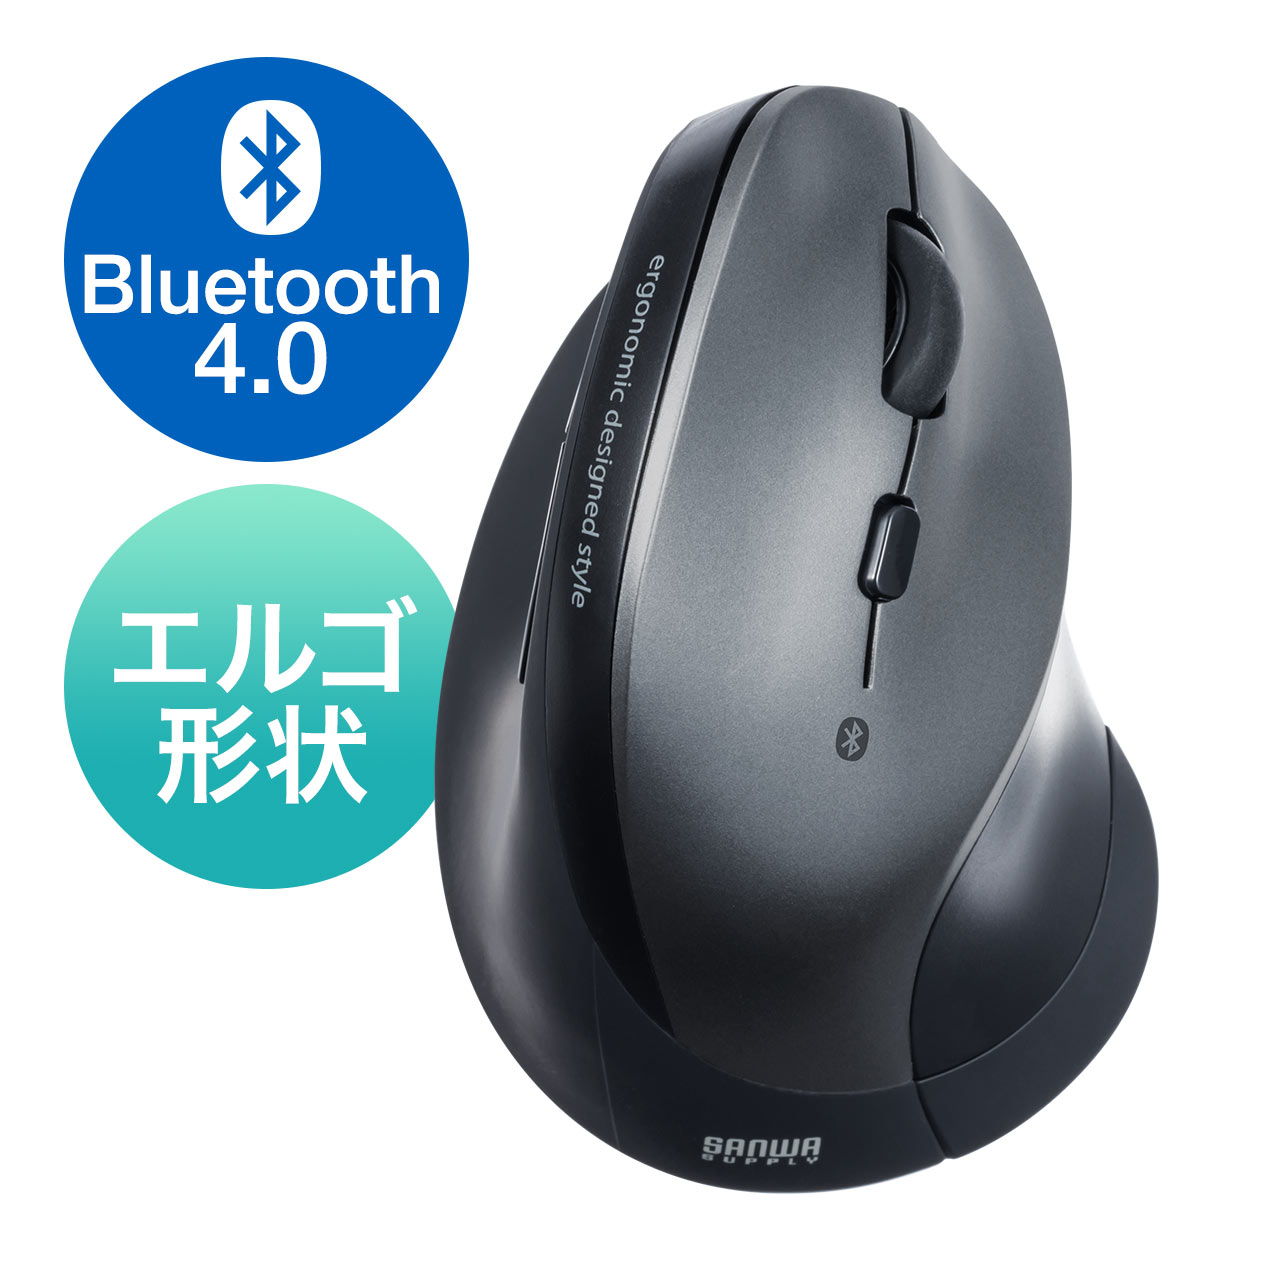 エルゴノミクスマウス Bluetooth Dpi切替 ブルーled光学式 400 Ma102 通販ならサンワダイレクト